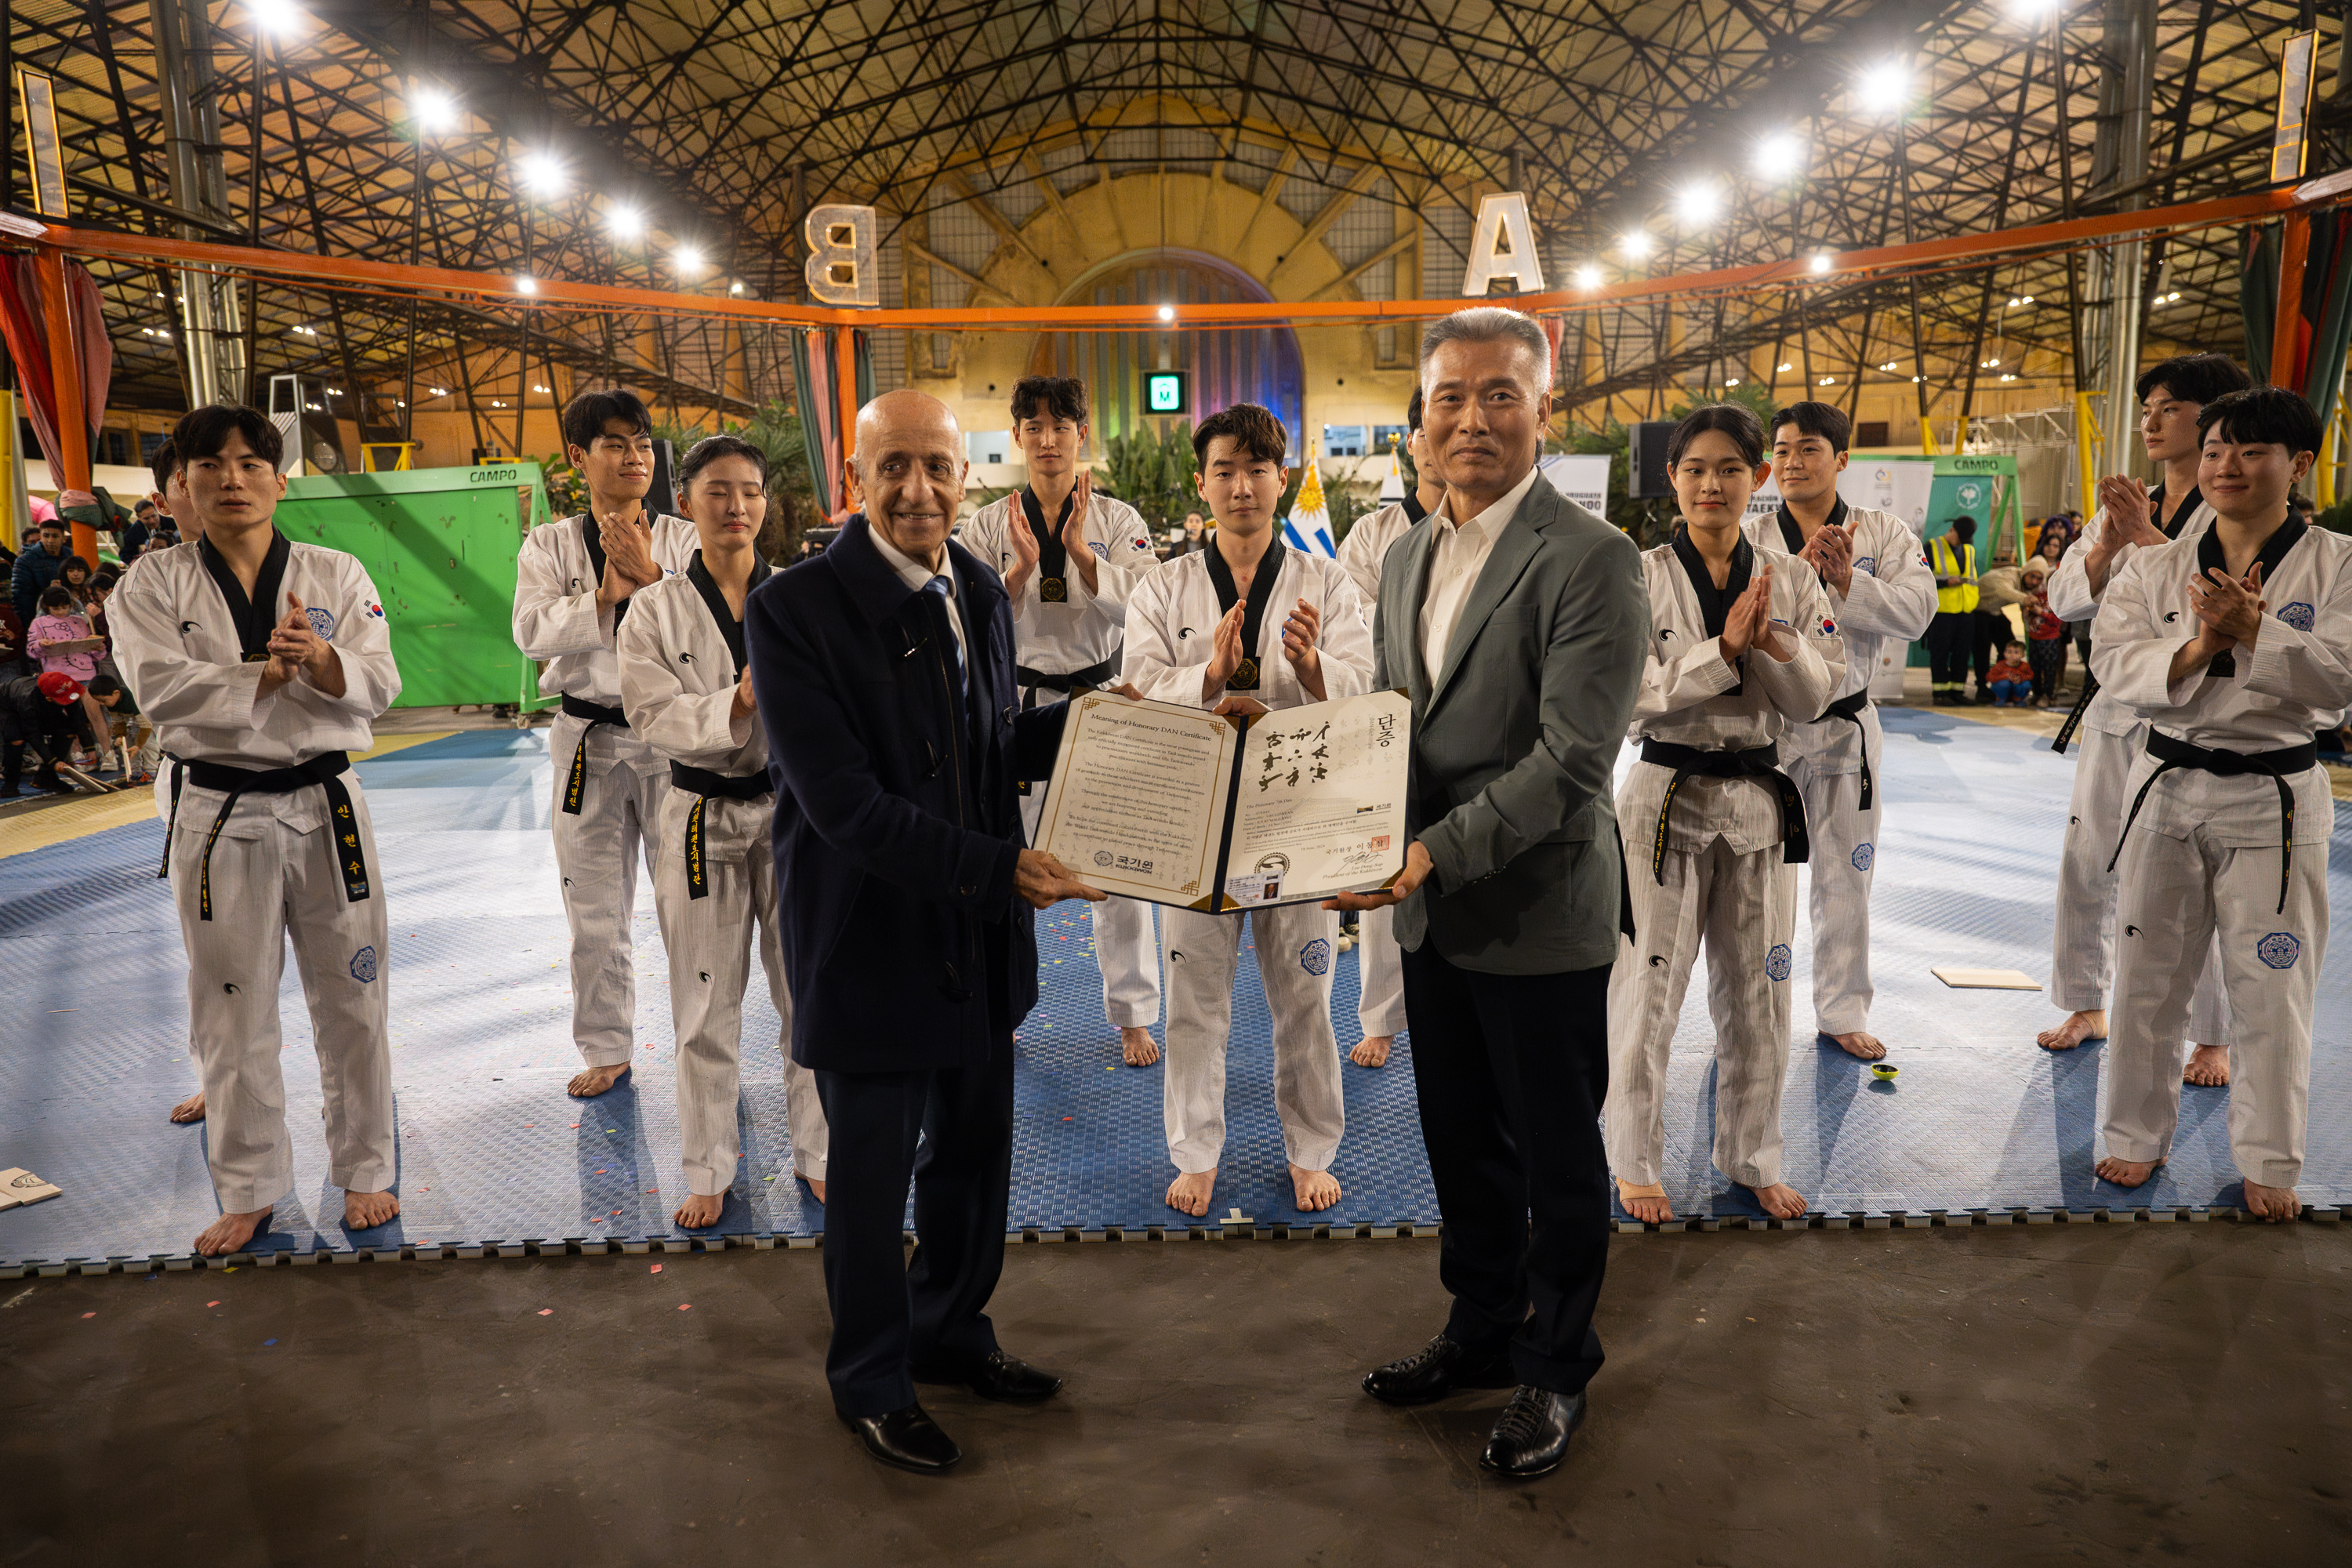 Demostración de Taekwondo en conmemoración del 60° aniversario de las relaciones diplomáticas entre Corea y Uruguay